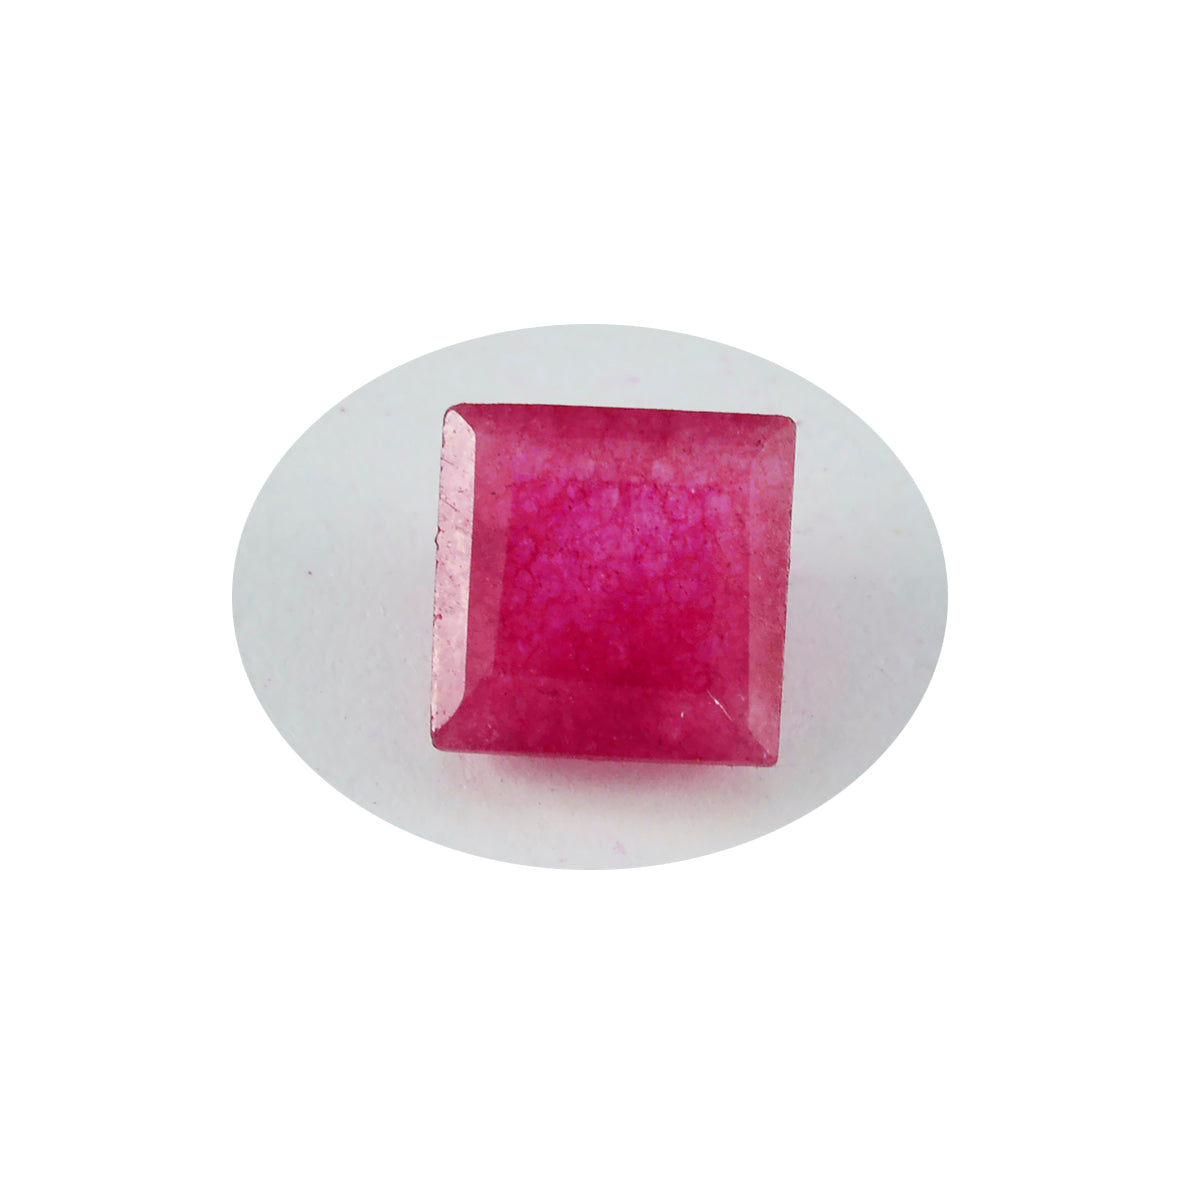 riyogems 1st äkta röd jaspis facetterad 10x10 mm fyrkantig form av vacker kvalitetspärla